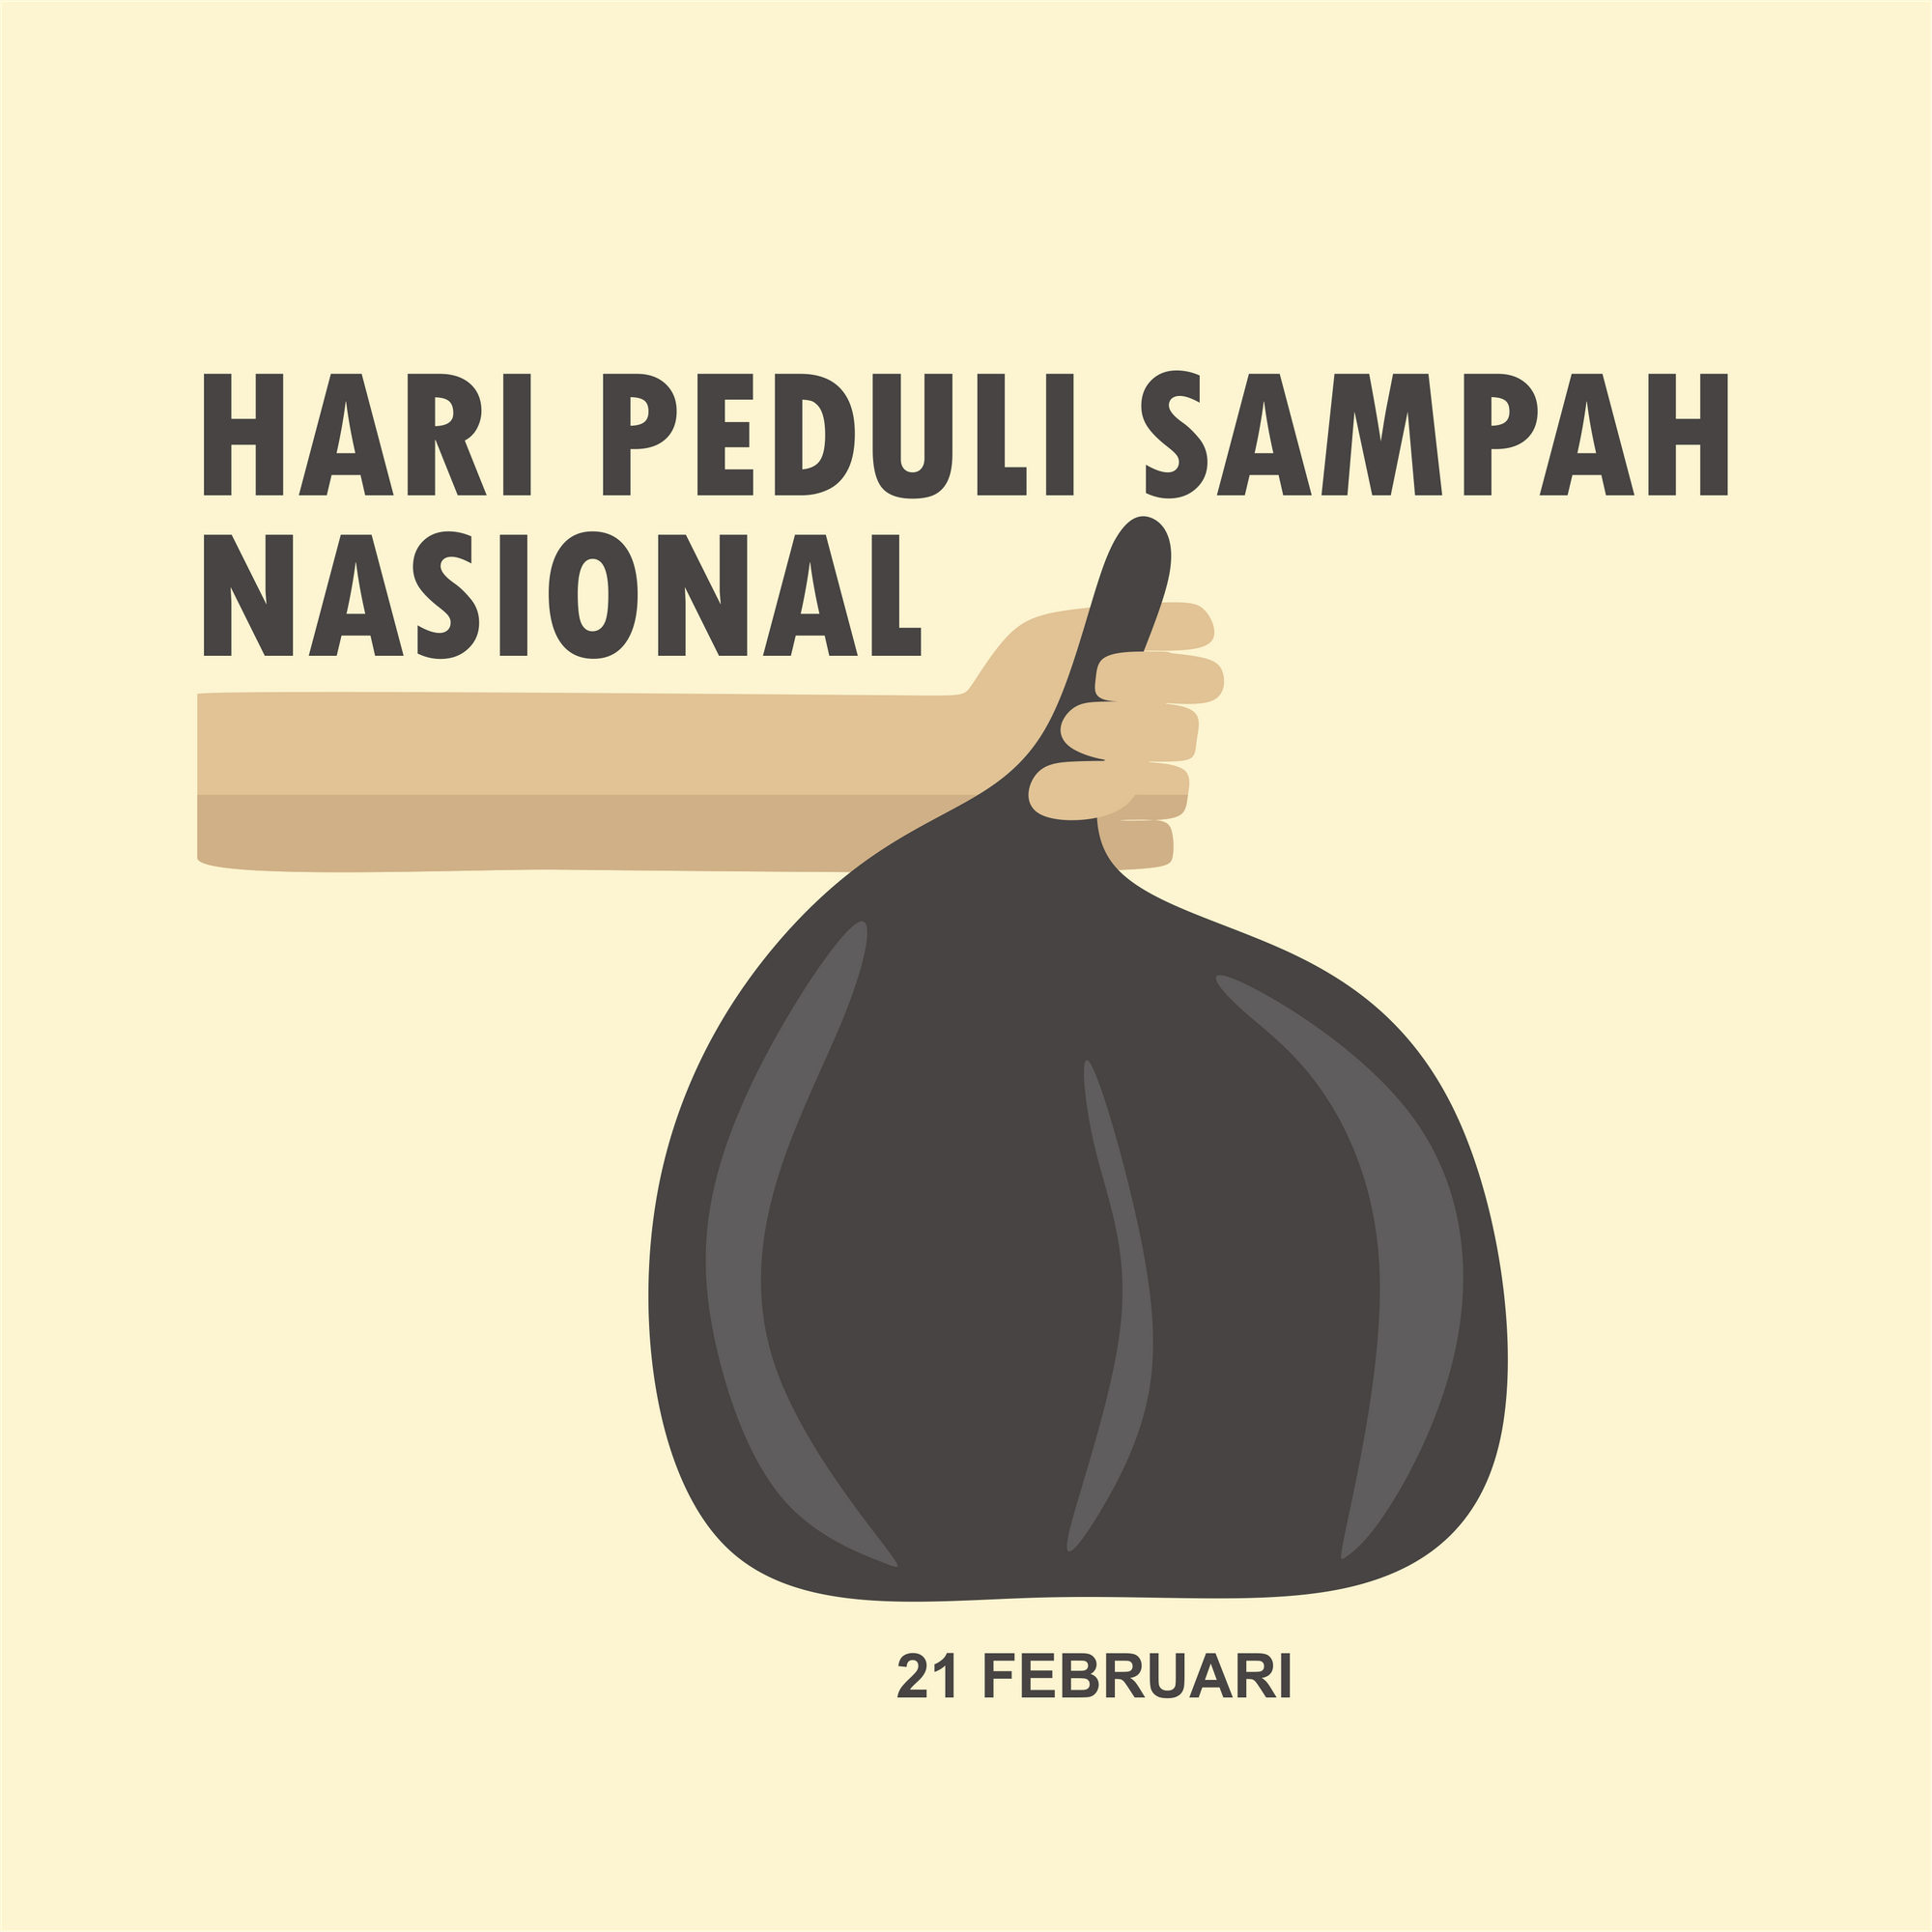 hari peduli sampah Indonesia